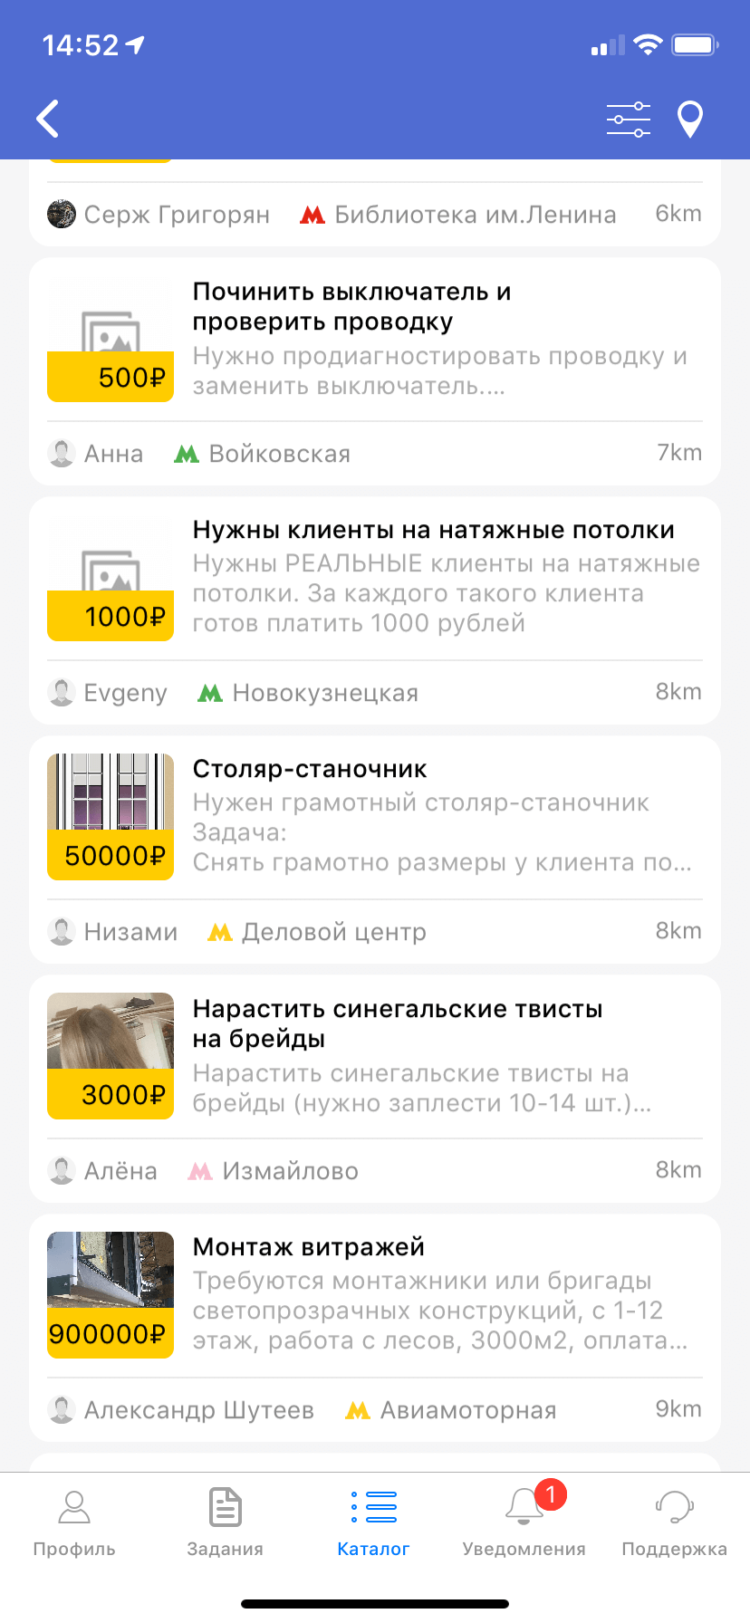 «Безруких.нет» — новый сервис от российских программистов. Чем новый сервис так хорош. Фото.